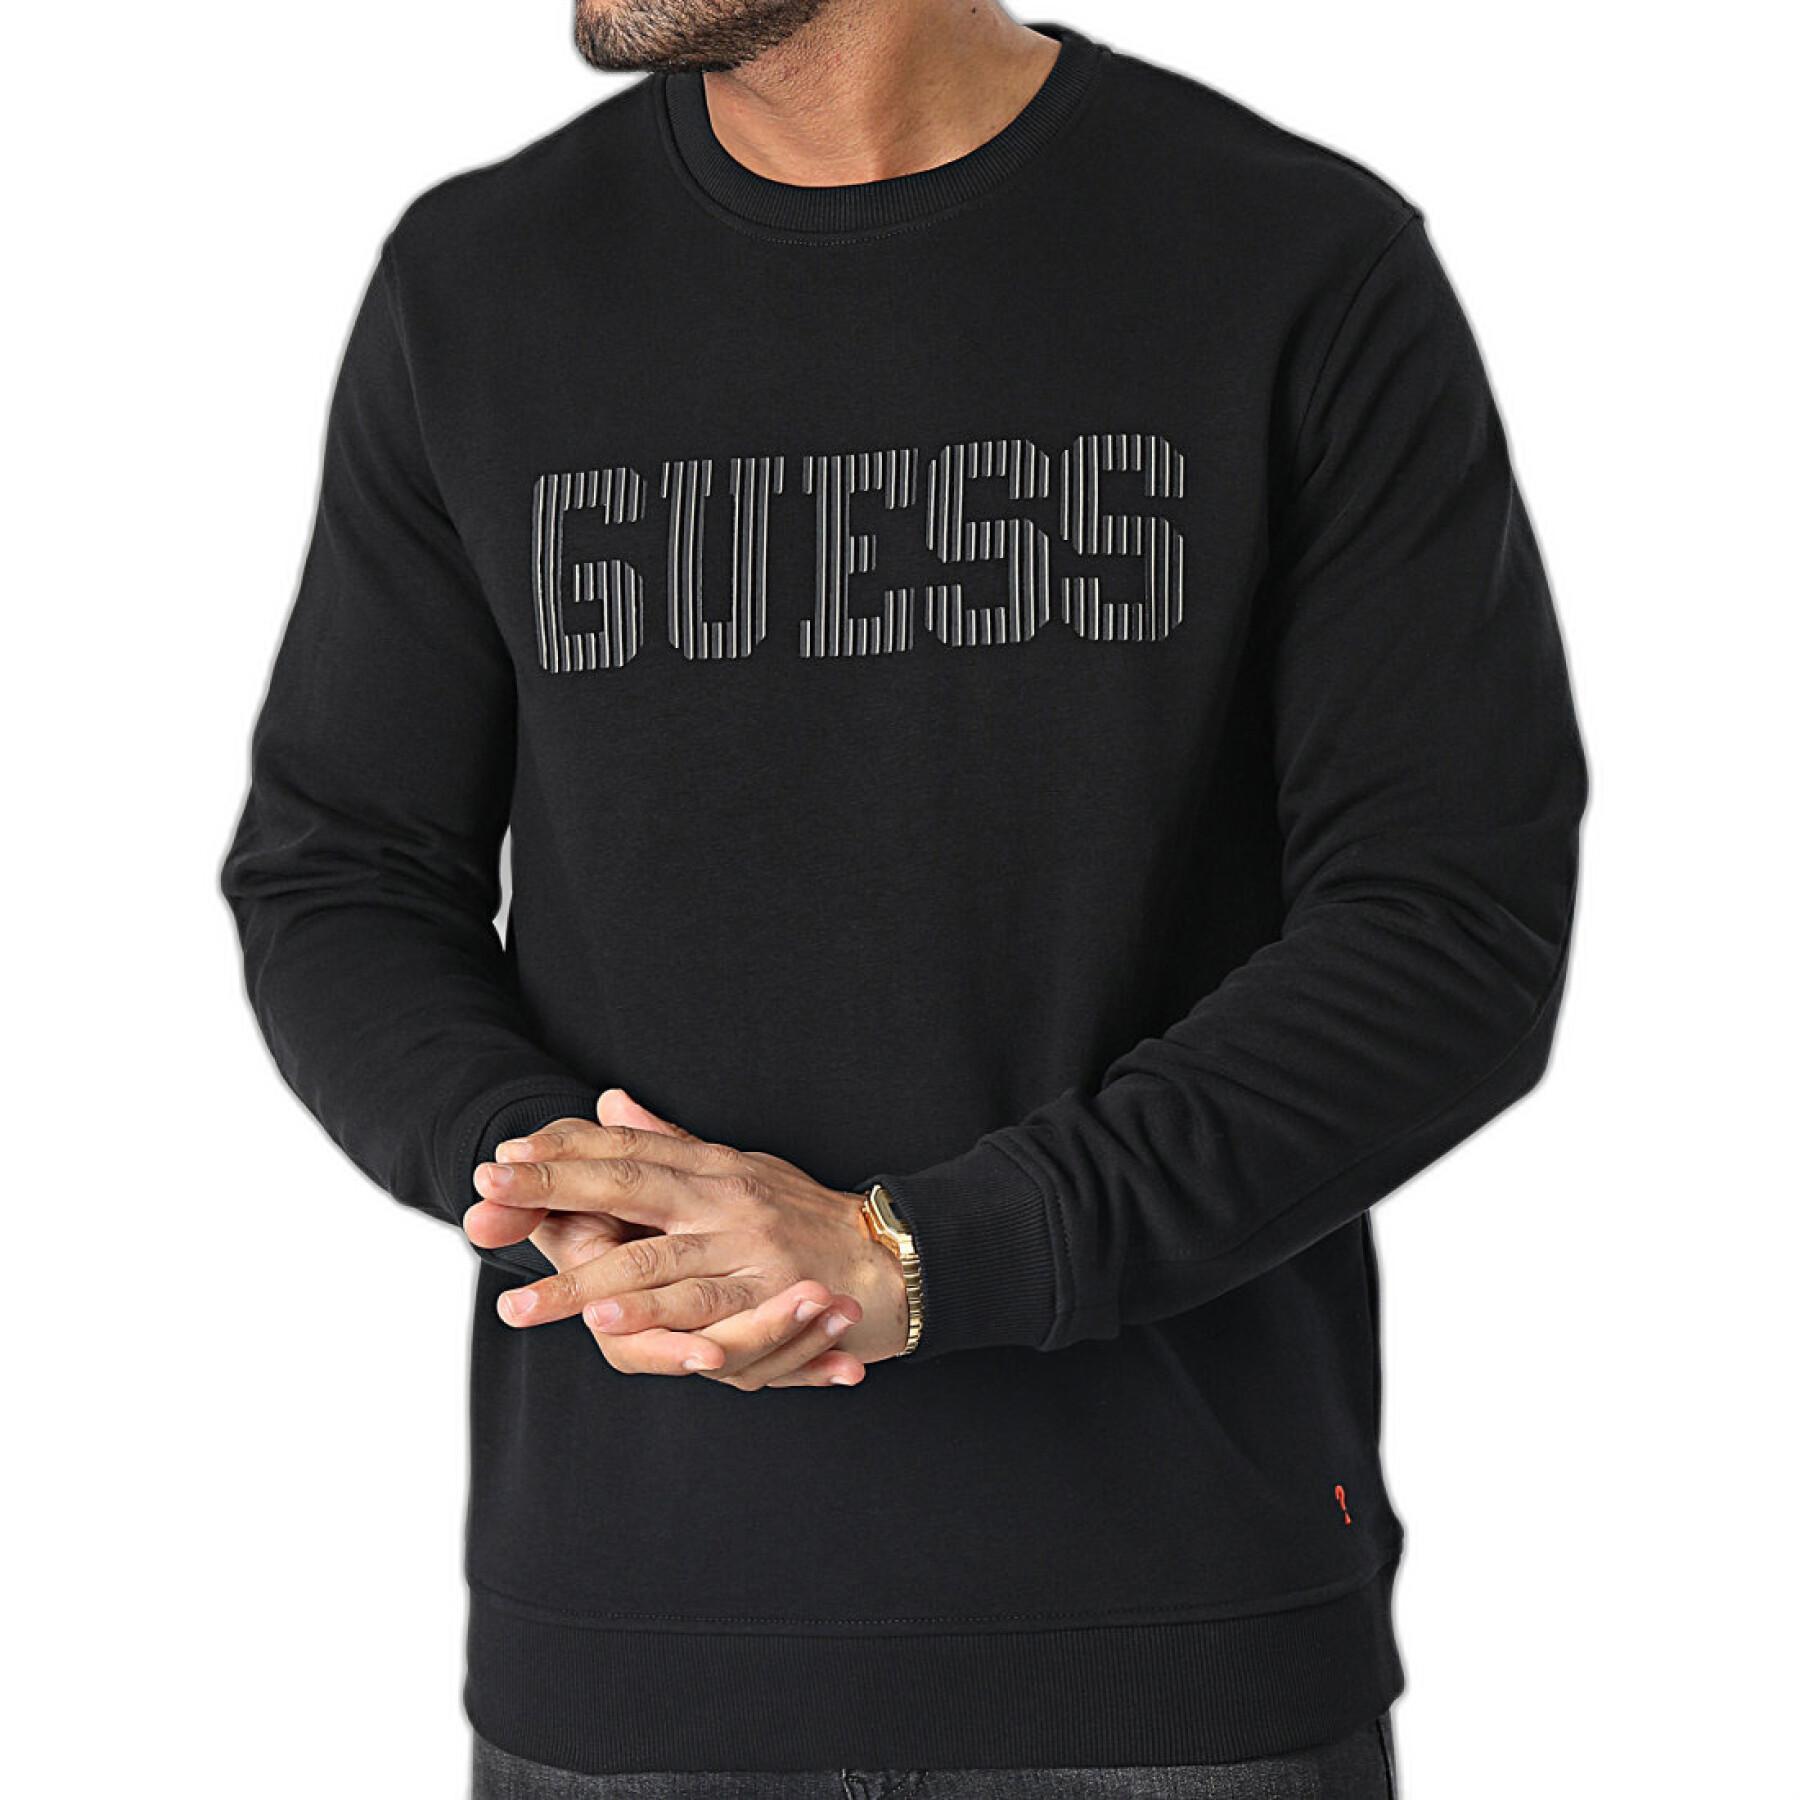 Sweatshirt Guess Beau